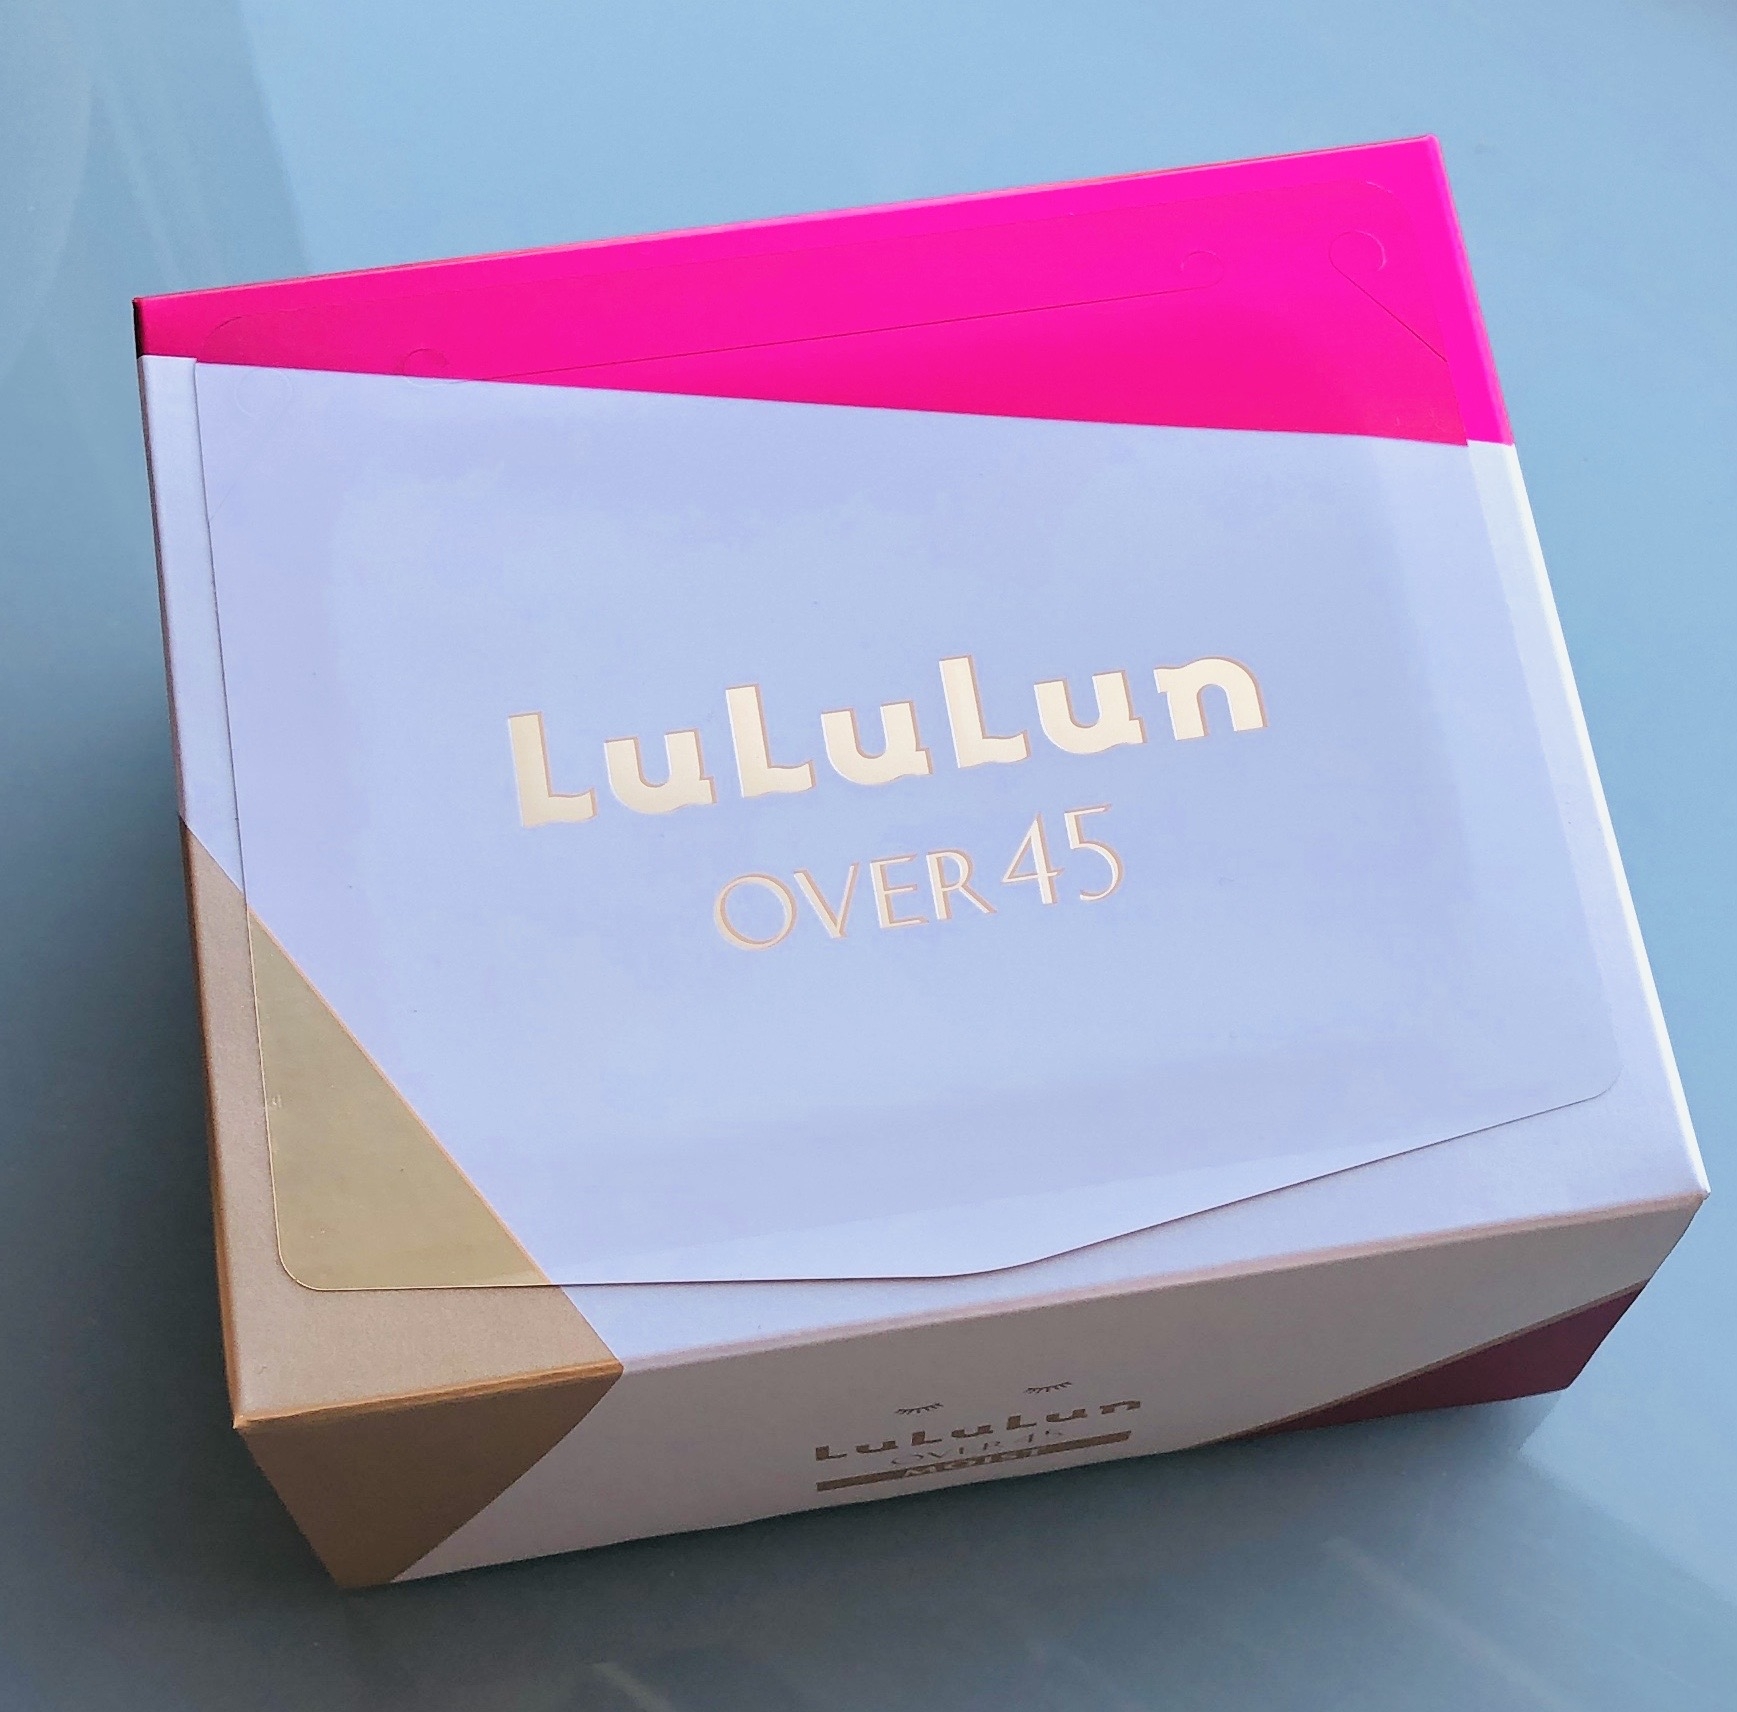 LuLuLun(ルルルン) Over45 カメリアピンク(モイスト)の良い点・メリットに関するトラネコさんの口コミ画像1